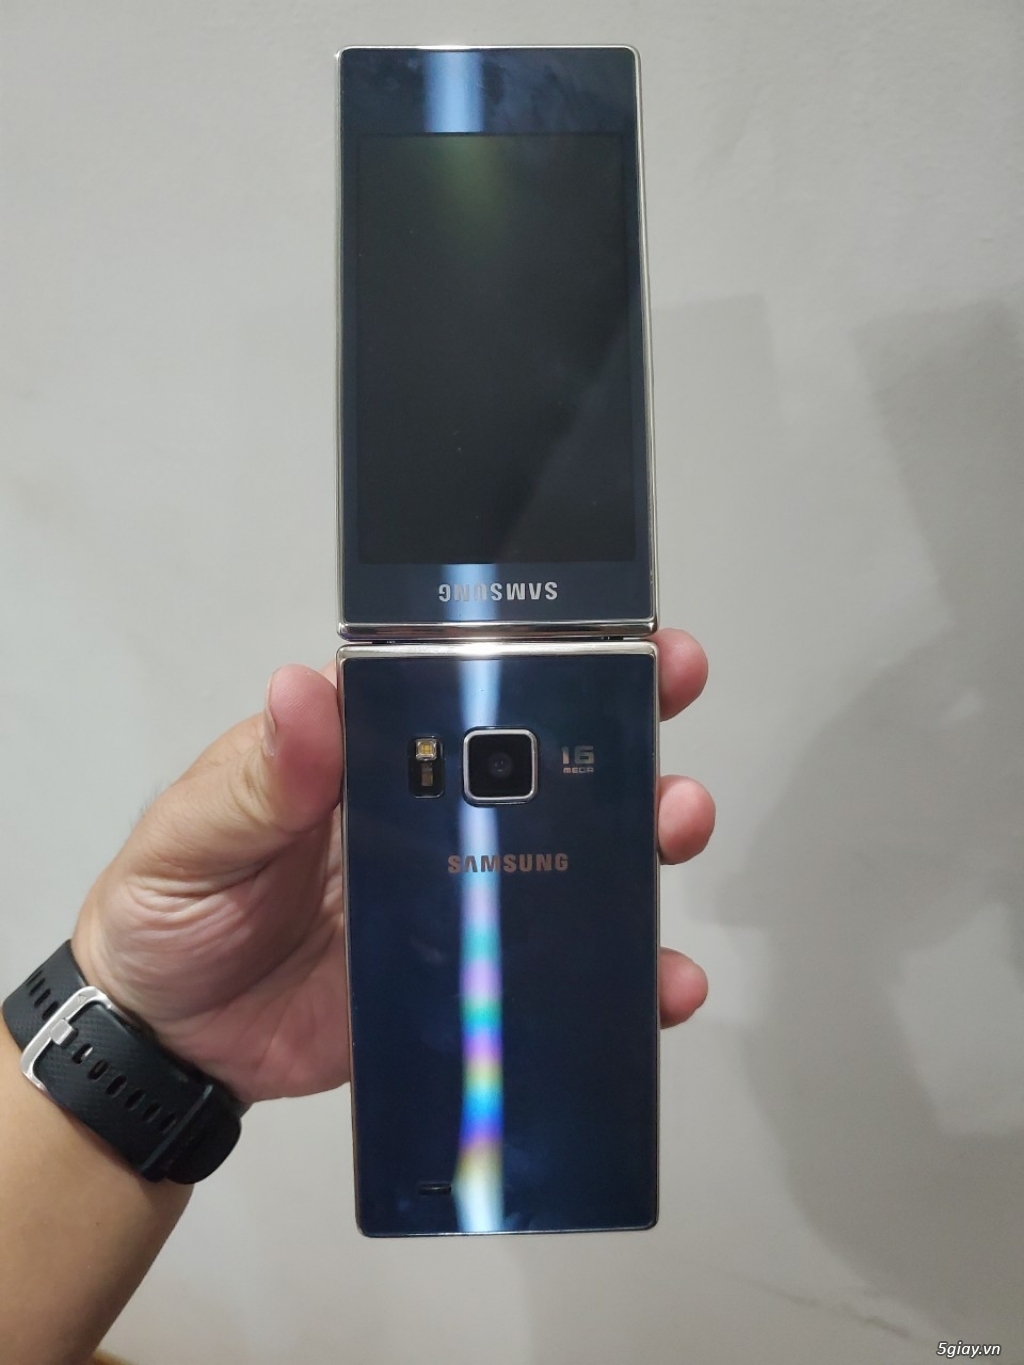 Hàng độc: Samsung G9198 nắp gập 2 màn hình đời cuối màu xanh siêu đẹp - 7